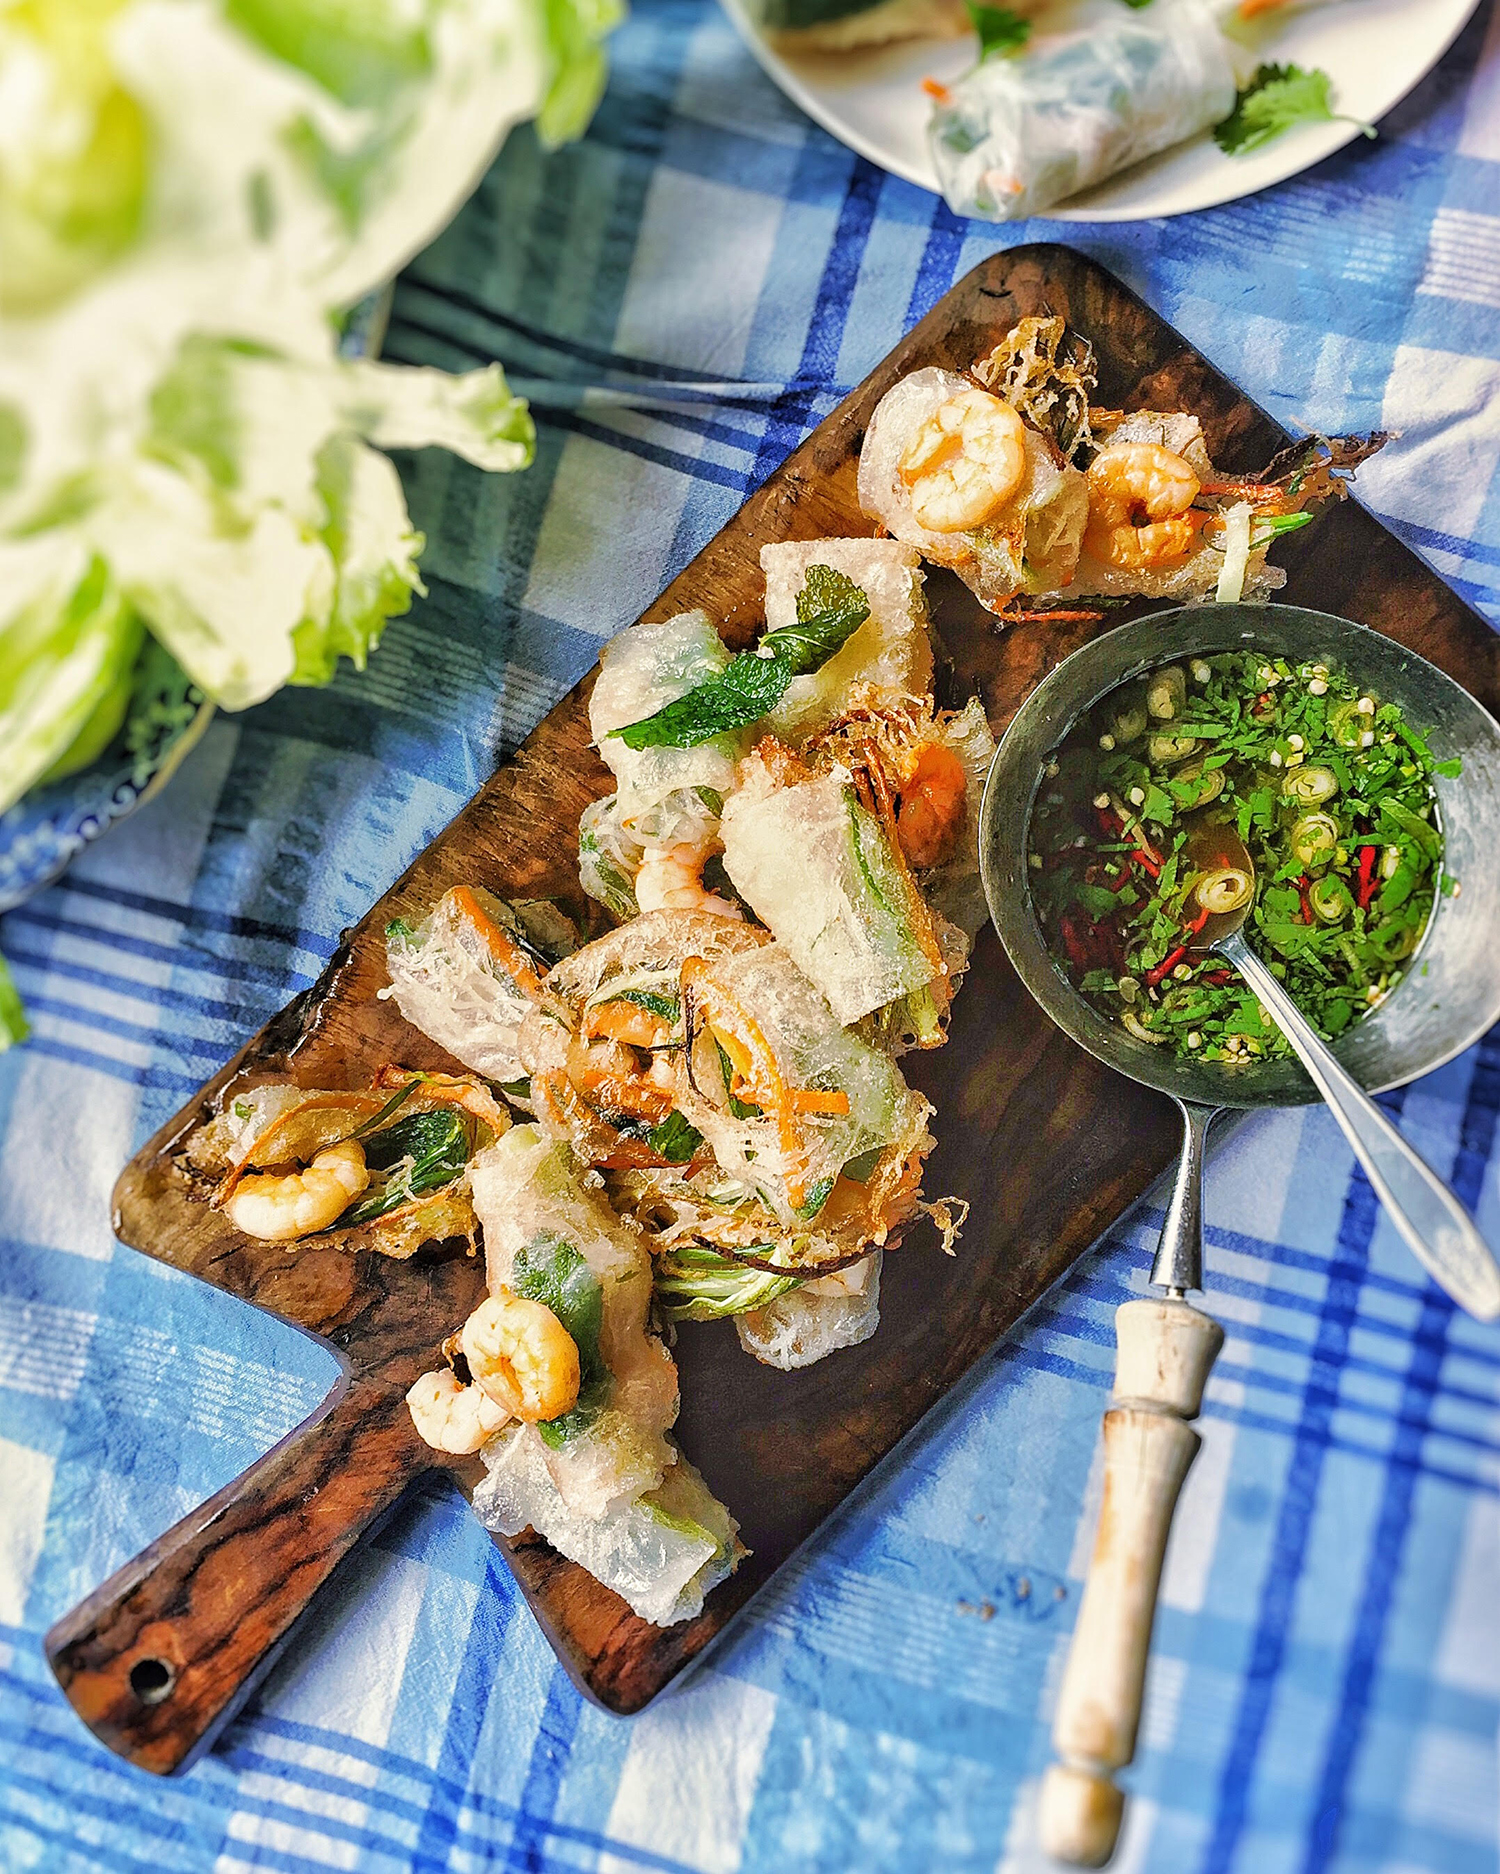 deep-fried-vietnamese-summer-rolls-with-dipping-sauce.jpg